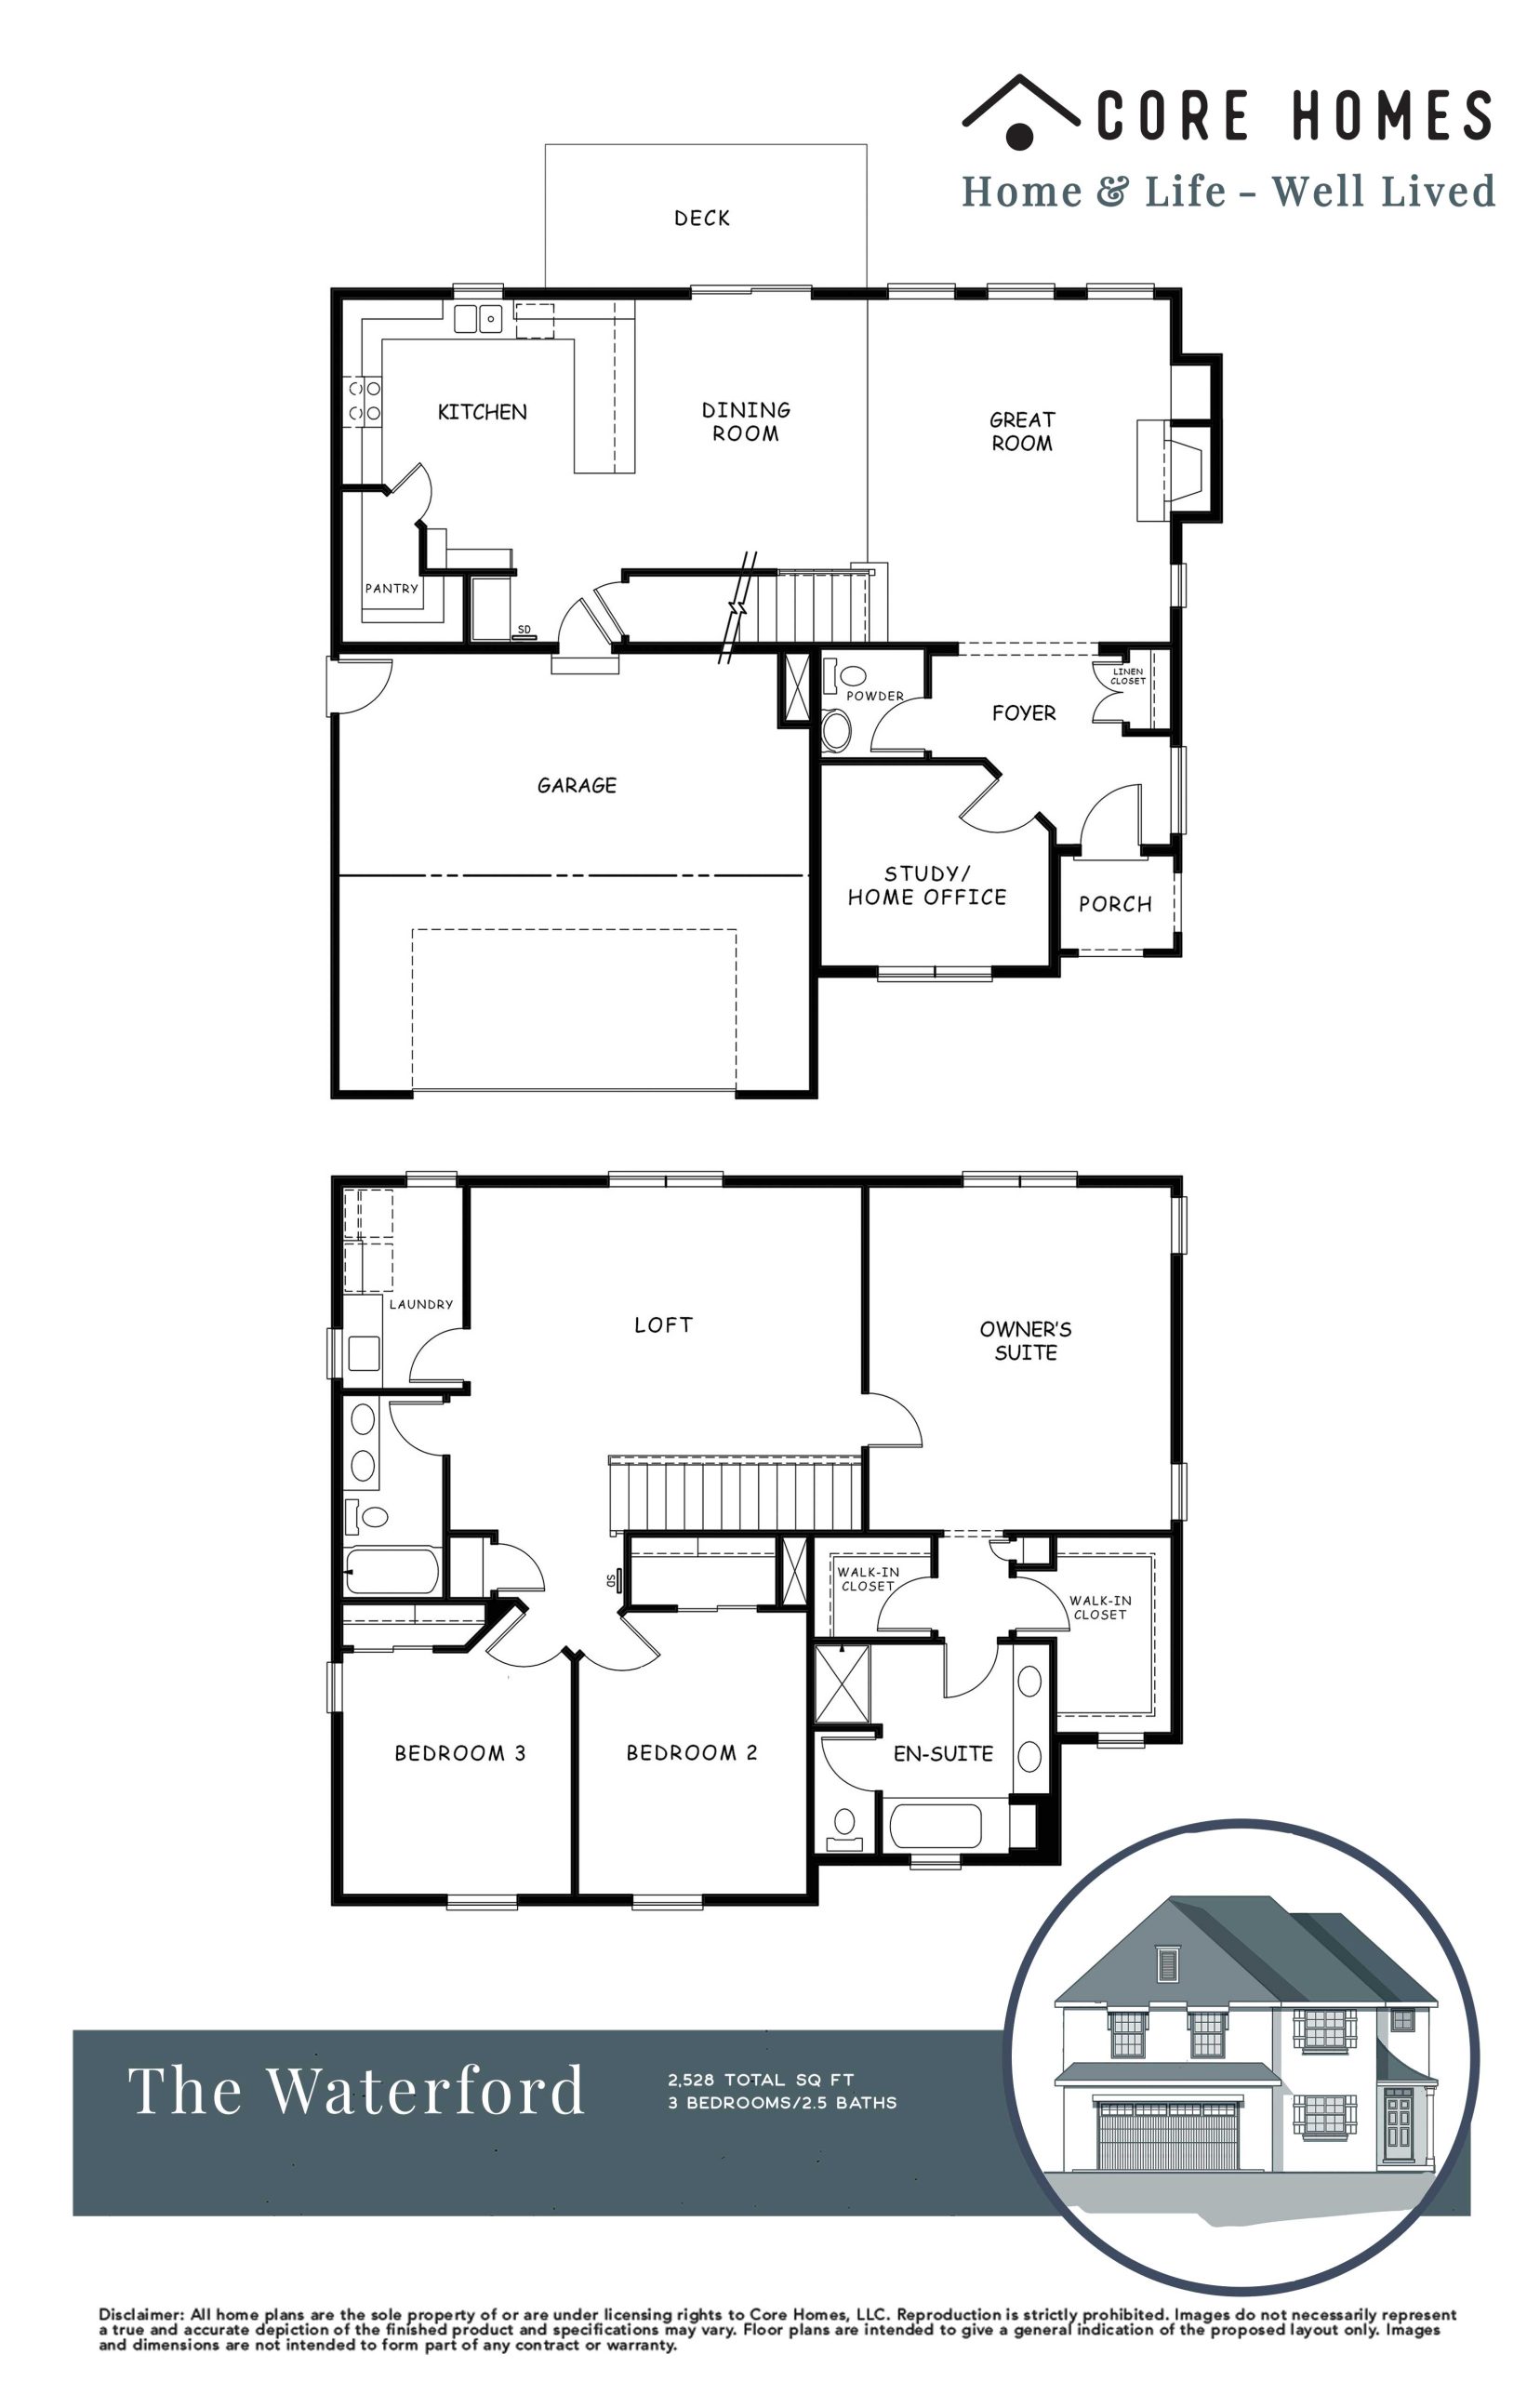 Waterford floor plan Core Homes